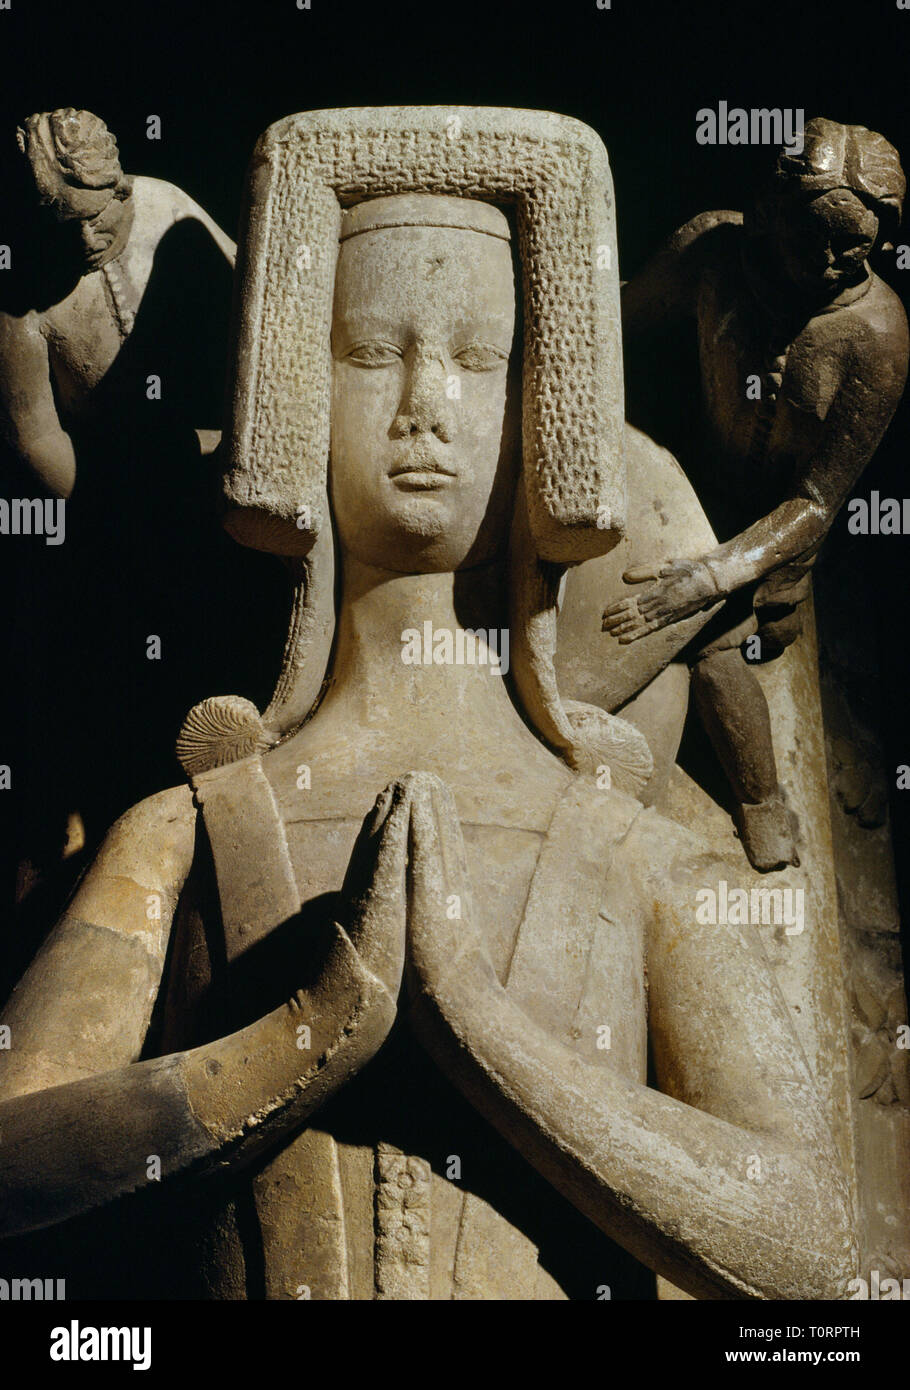 Stackpole Elidor chiesa, Pembrokeshire, Wales, Regno Unito: un splendidamente scolpito & dettagliata femminile medievale effigie (c.1370), le mani giunte in preghiera. Foto Stock